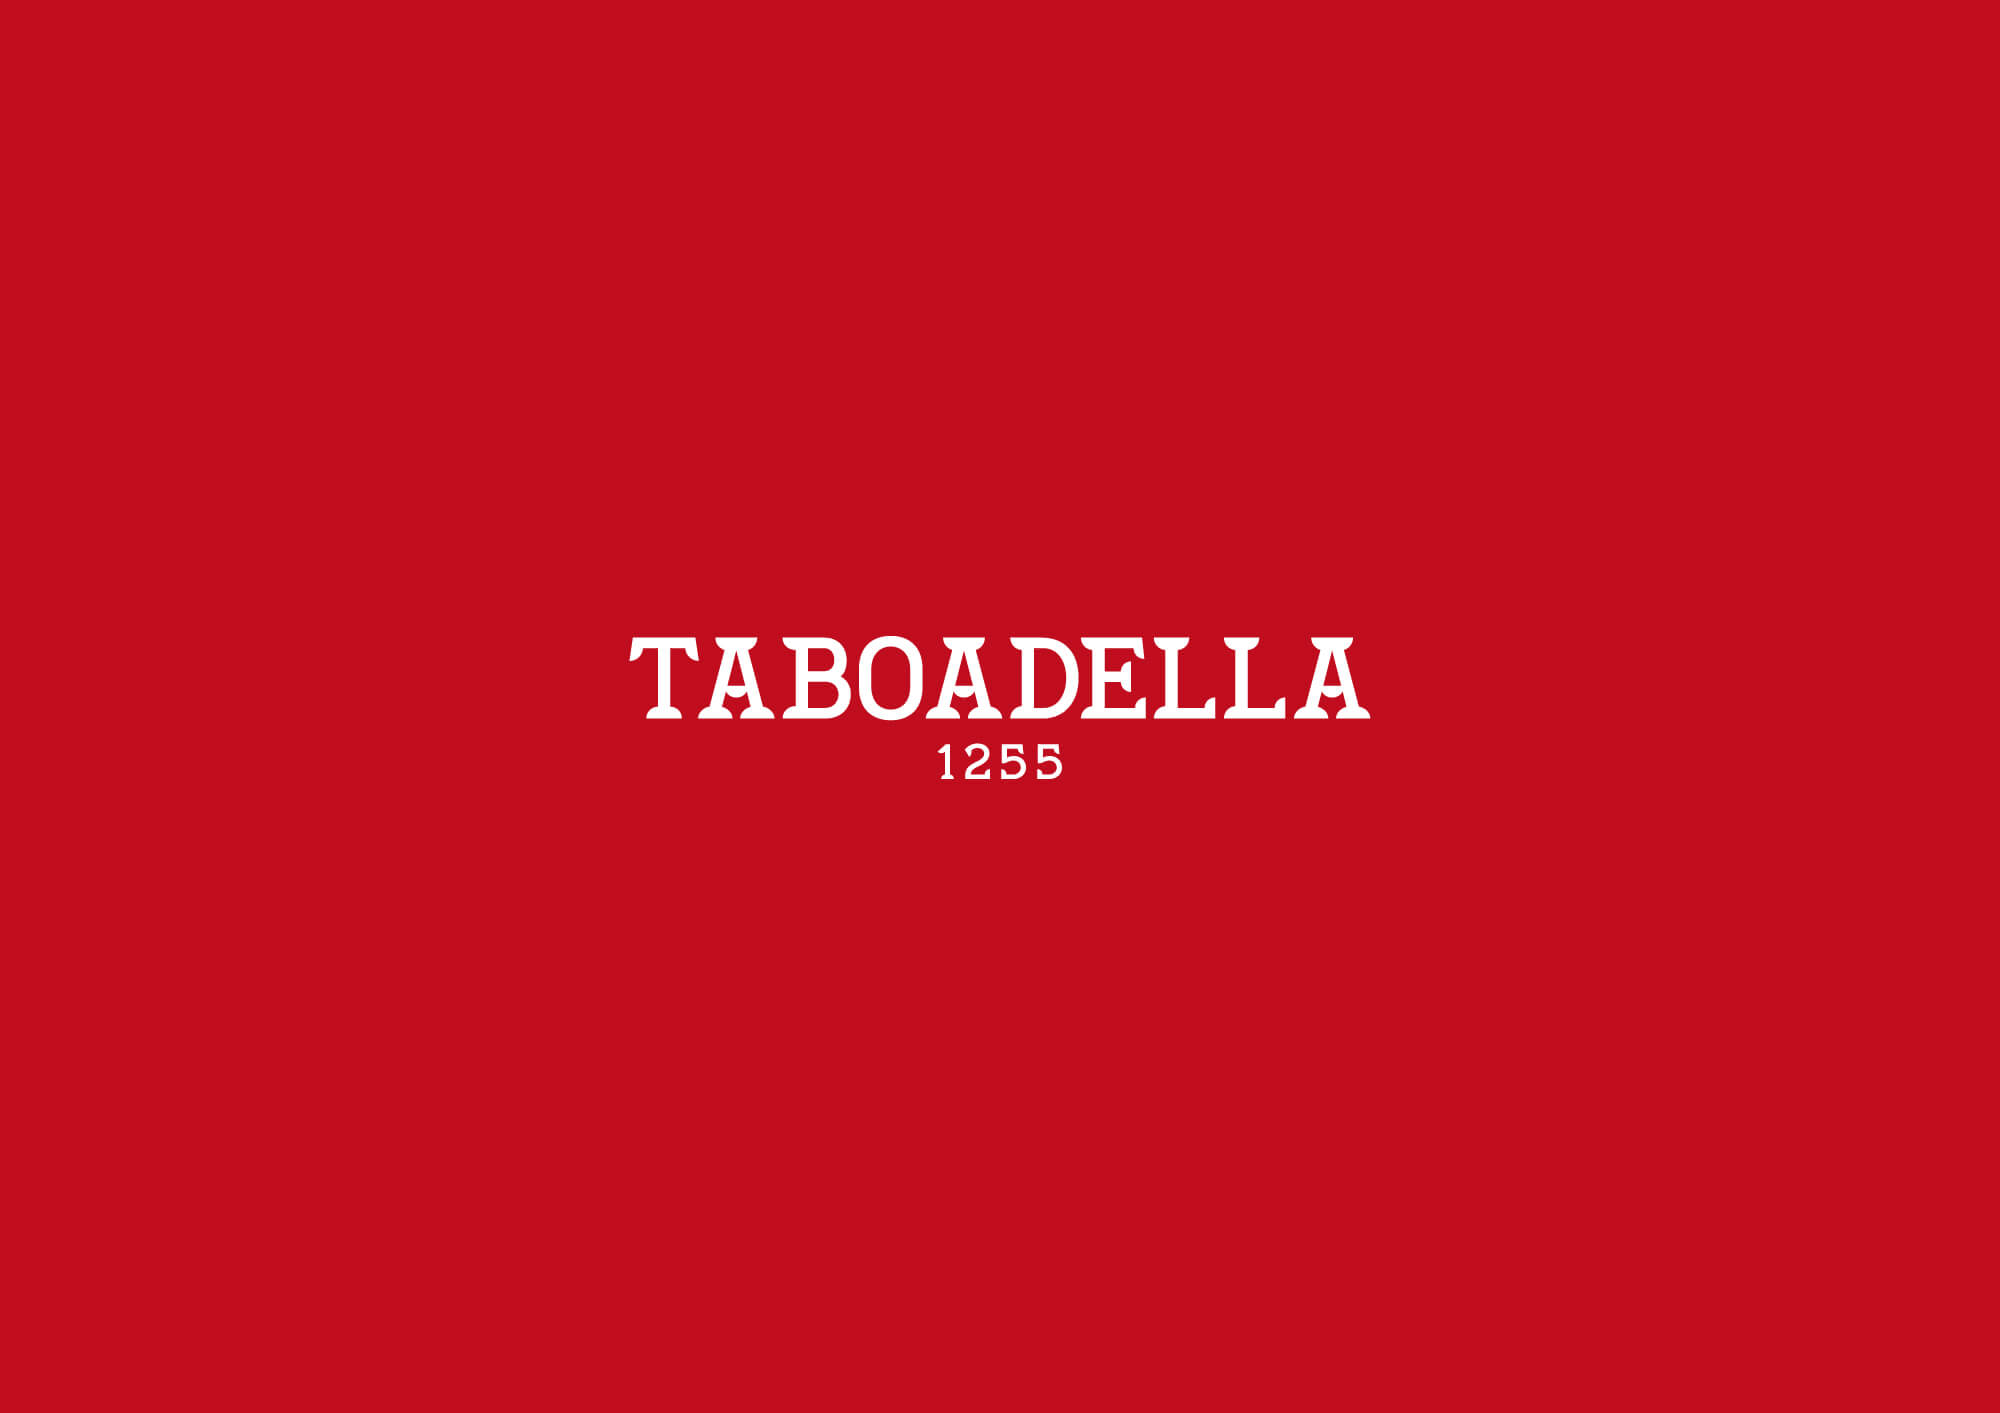 Taboadella, SA